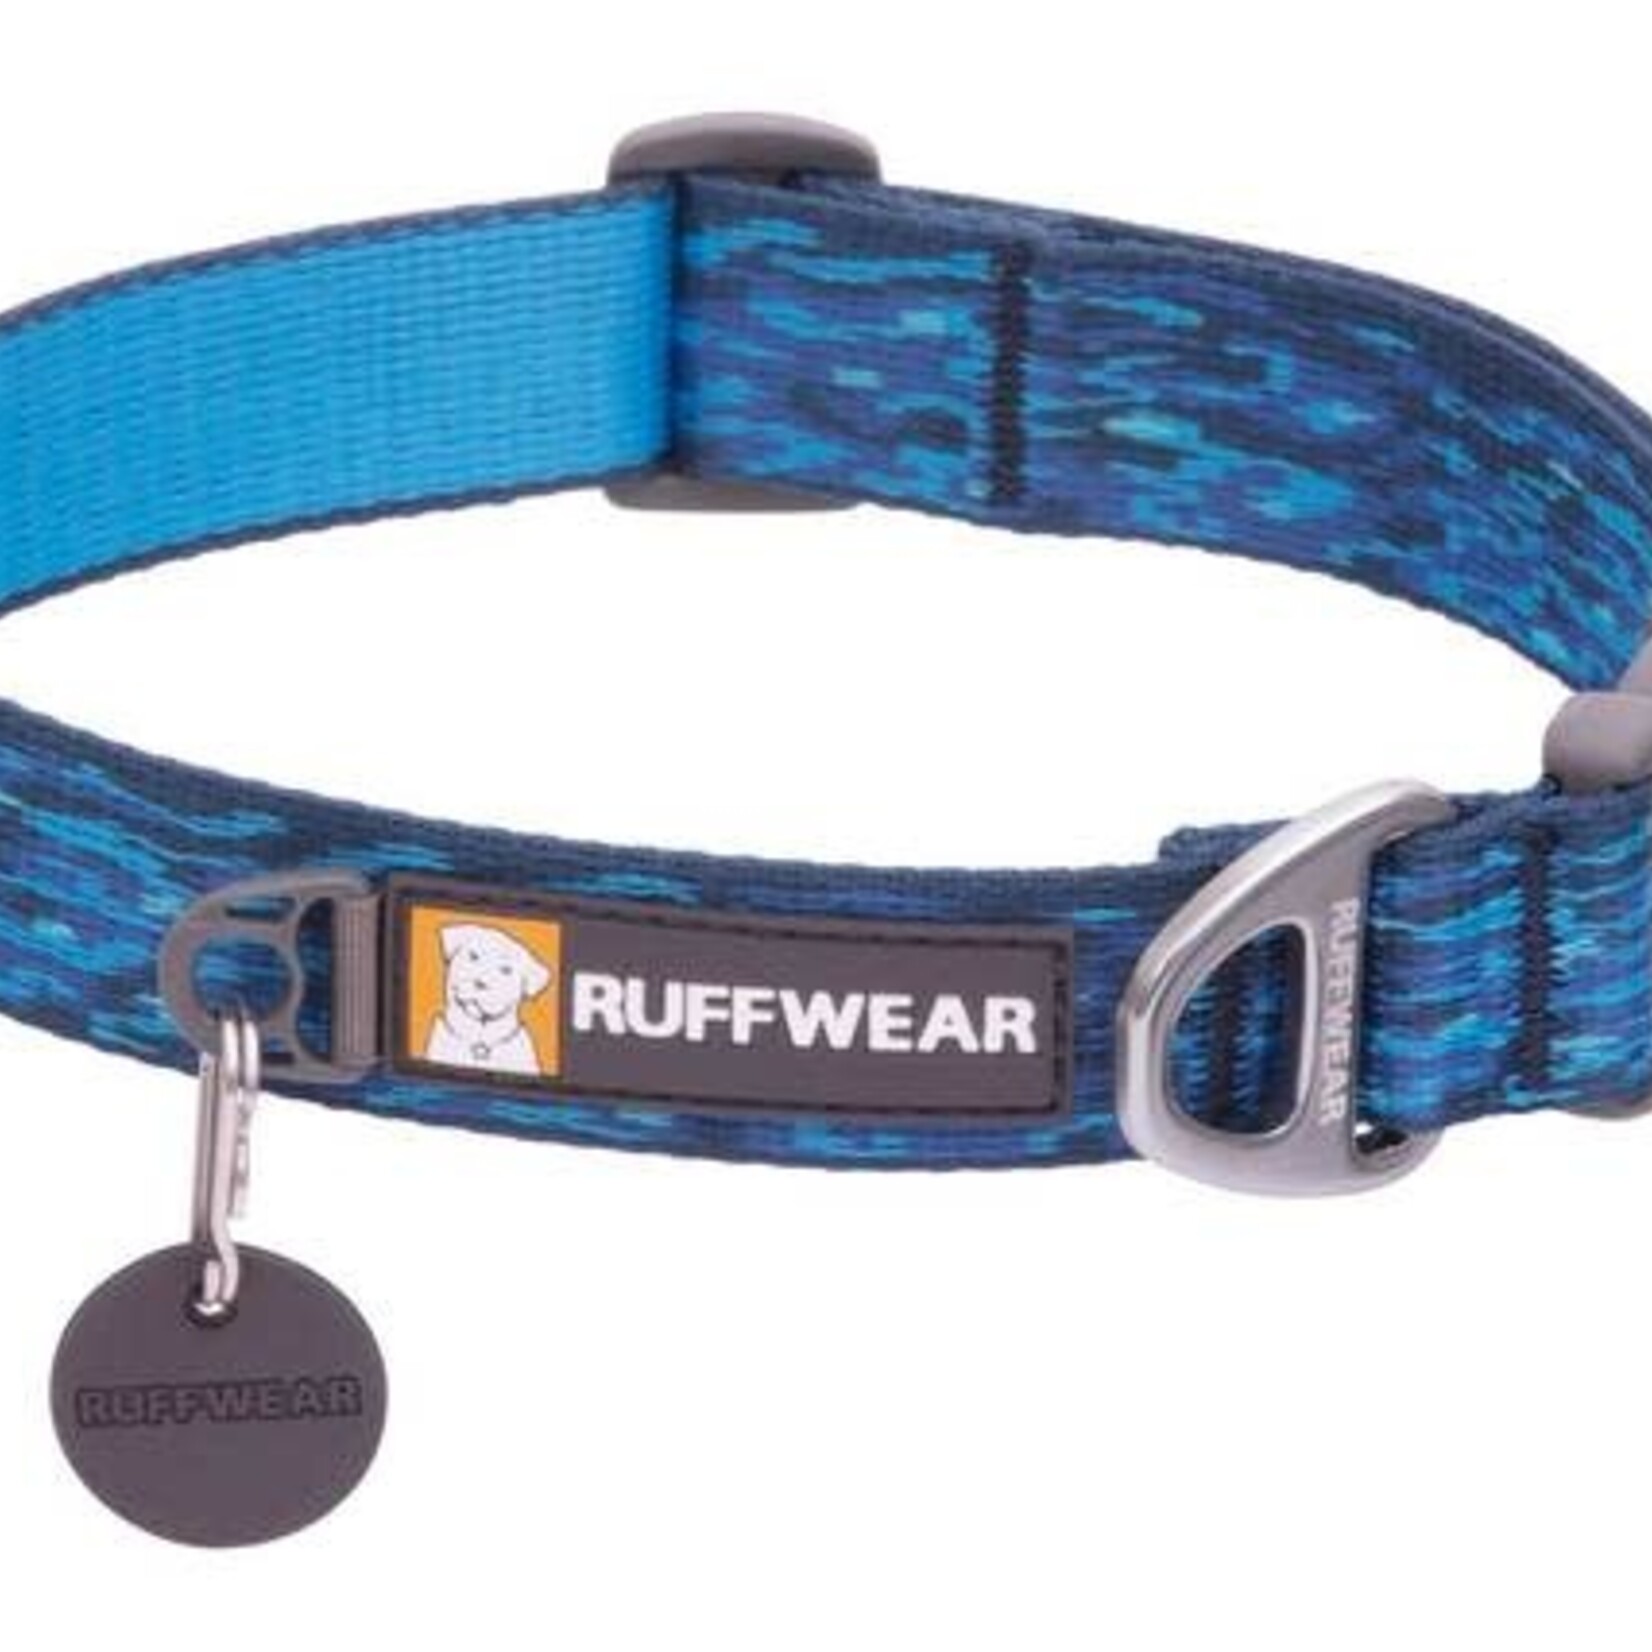 Ruffwear Ruffwear Flat Out collar 2021